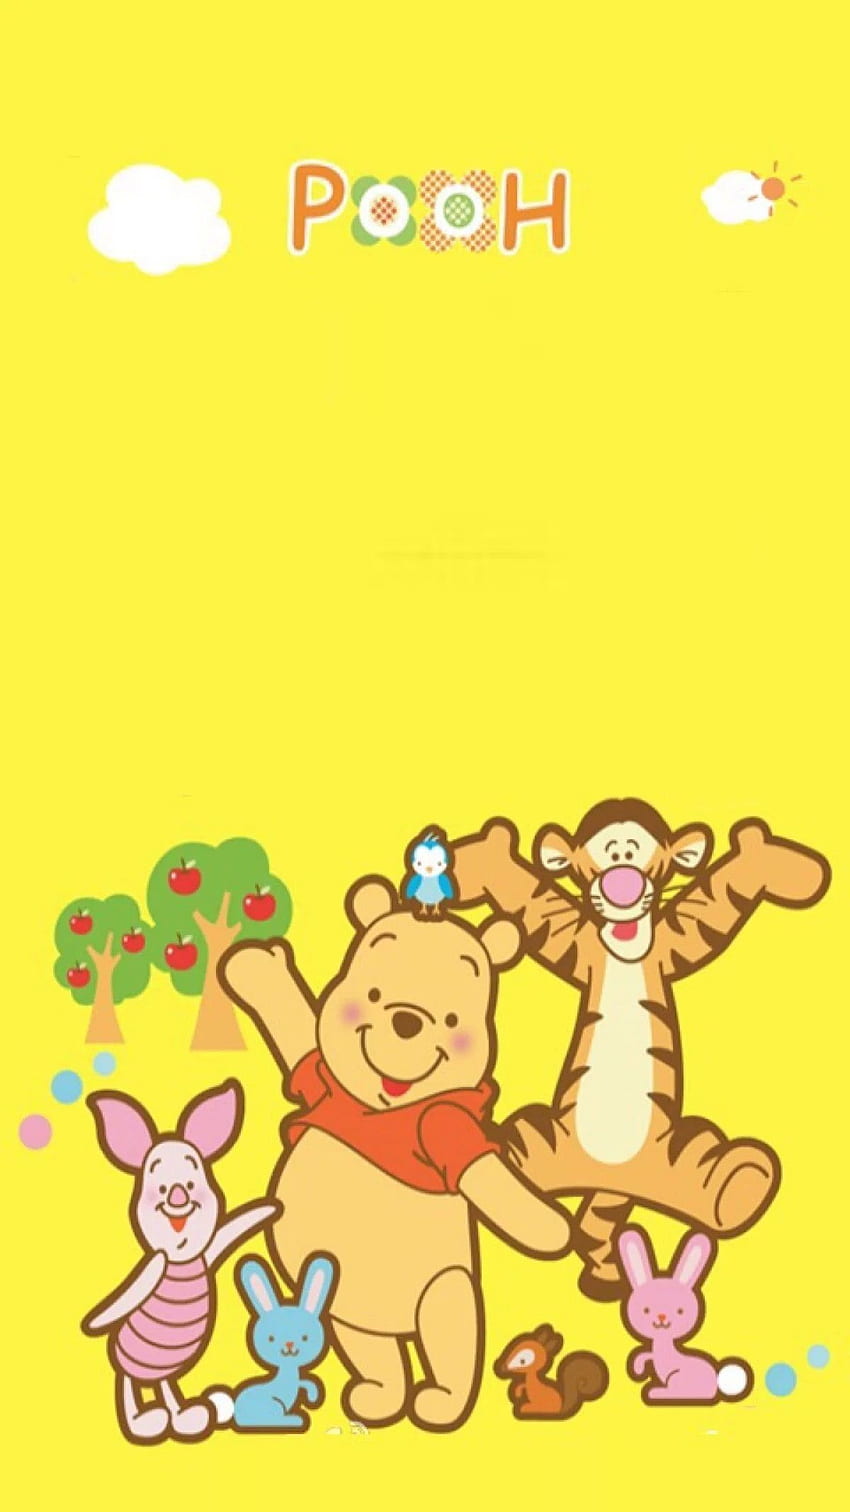 Gấu Pooh là một nhân vật đáng yêu và thân thiện mà bạn không thể không yêu thích. Hãy xem những hình ảnh về Gấu Pooh để cảm nhận được sự dễ thương của người bạn đồng hành này.